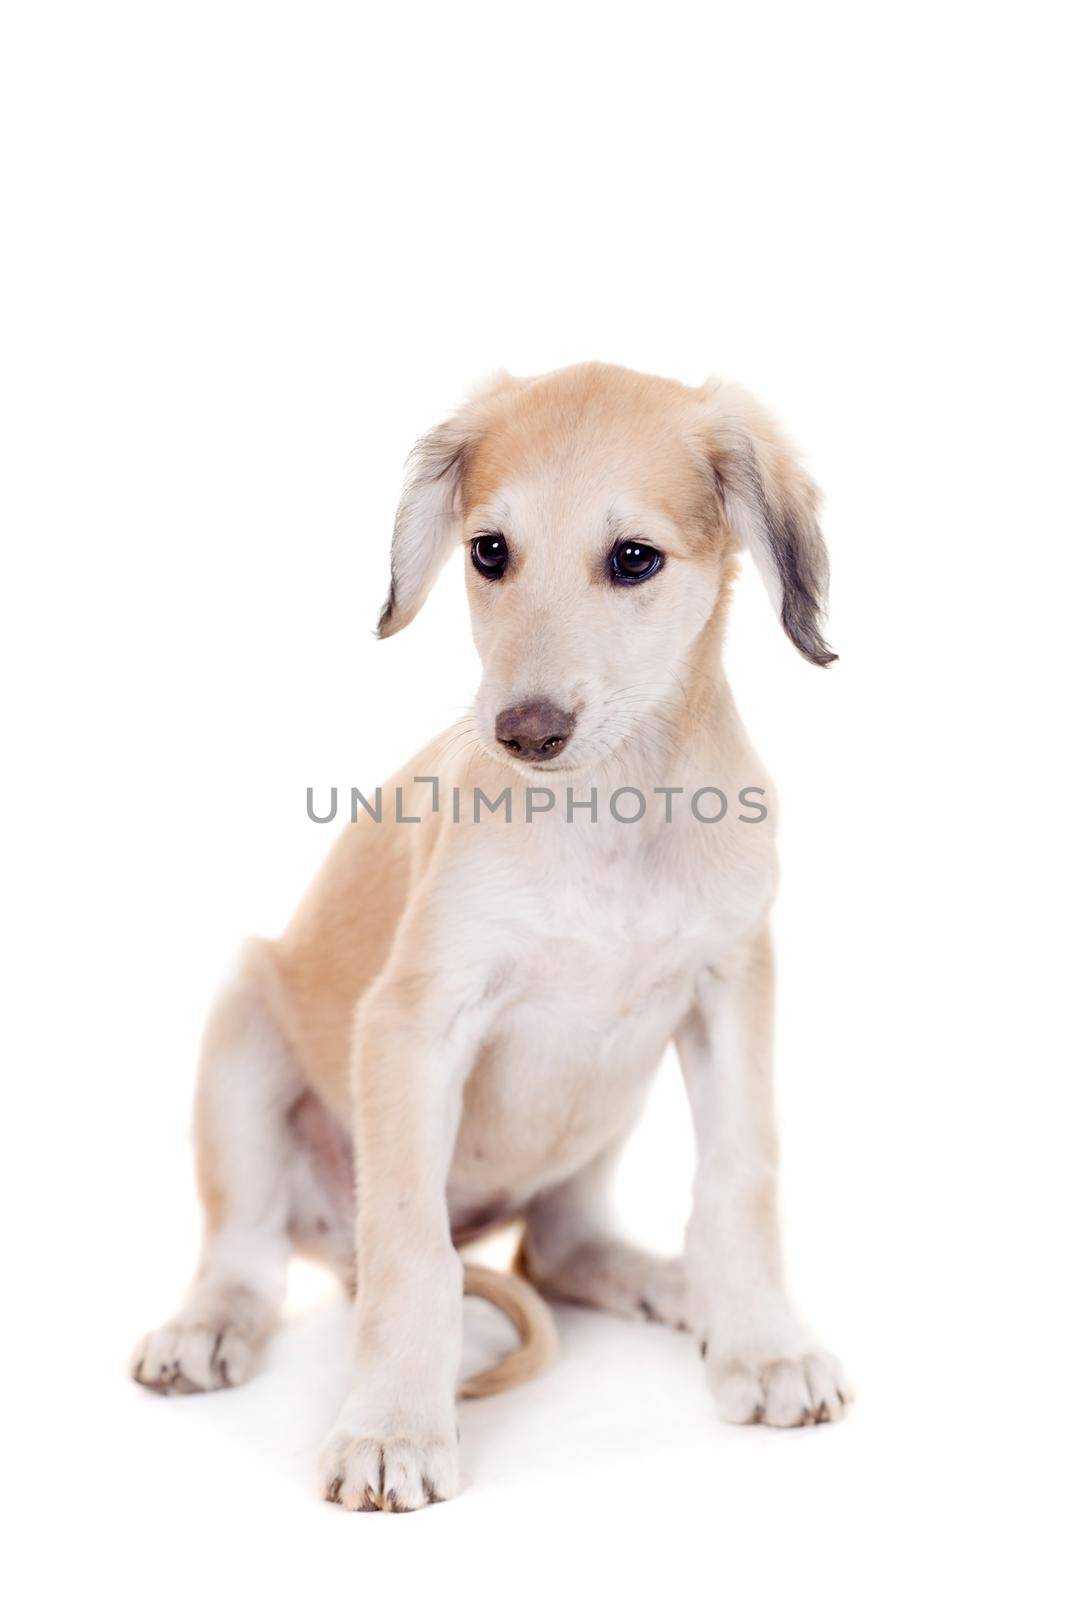 Tazy - Kazakh greyhound on white by RosaJay